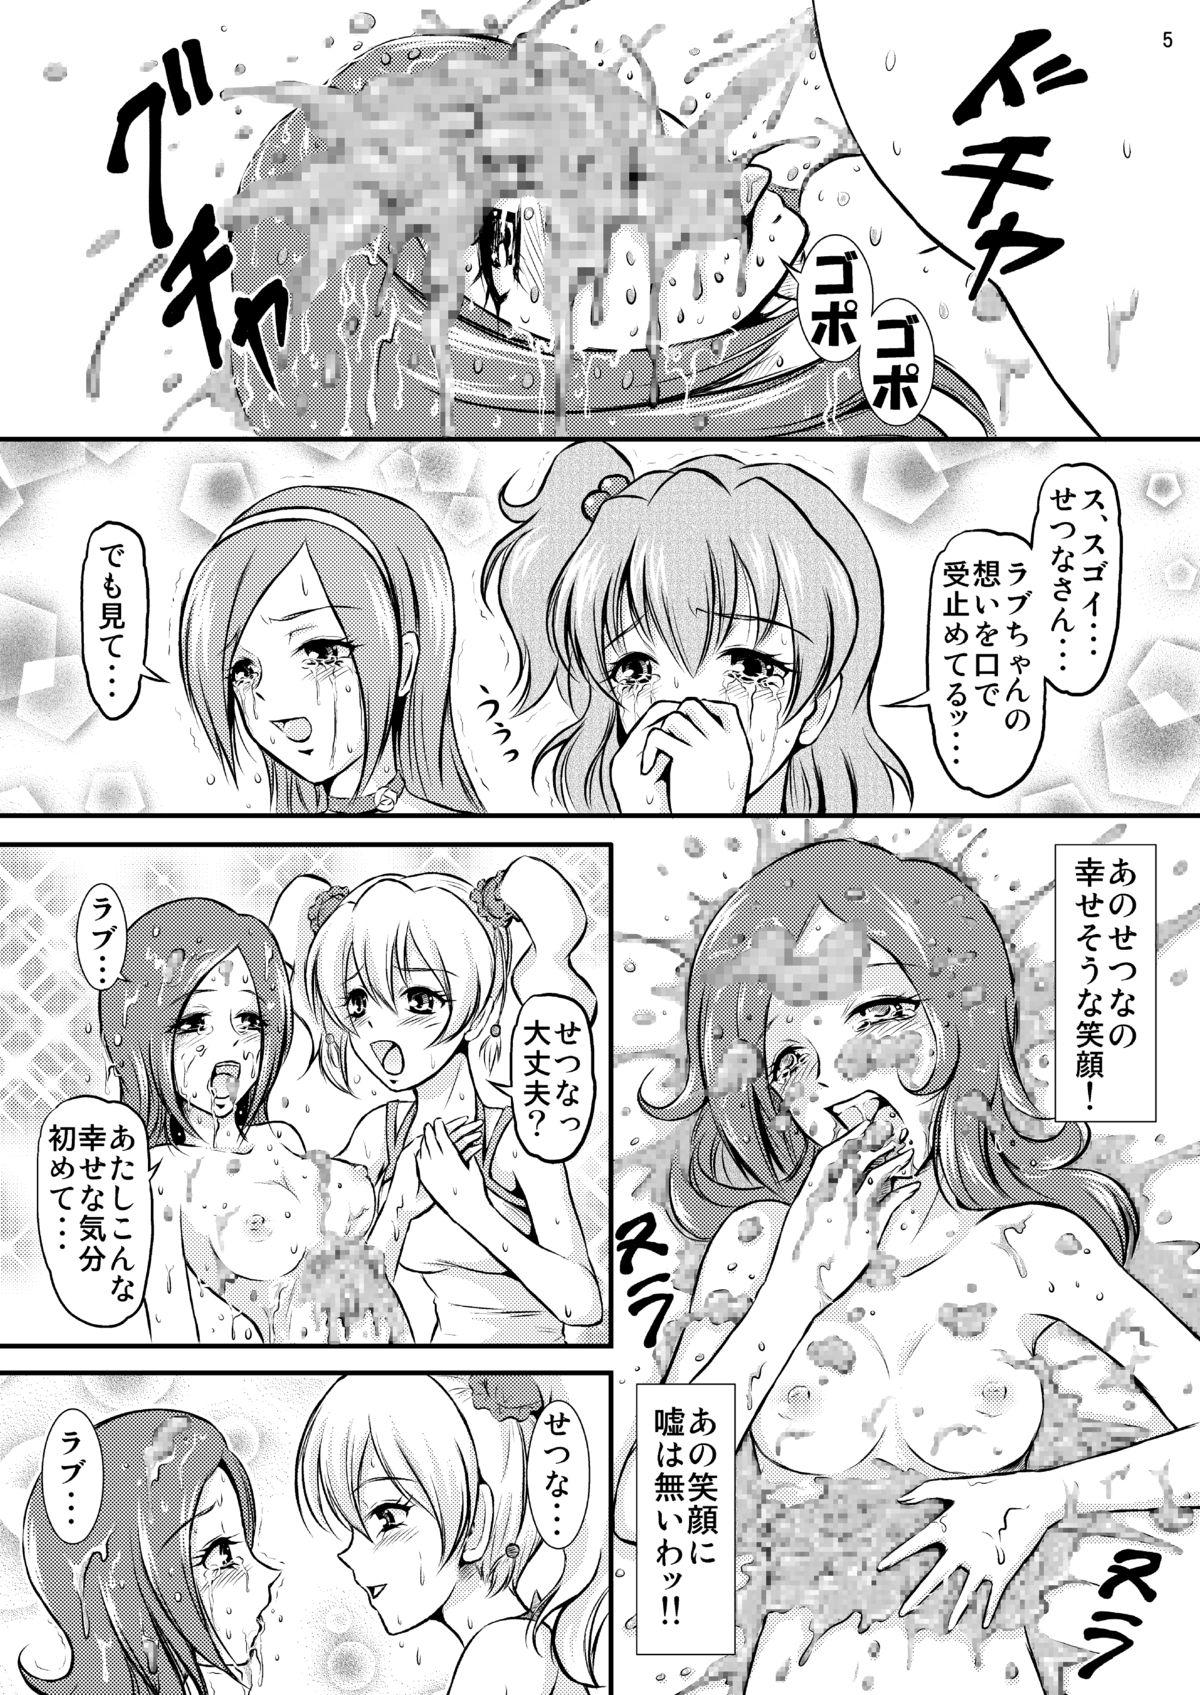 Humiliation Fresh Curry no Oishii Tabekata - Fresh precure Strip - Page 6